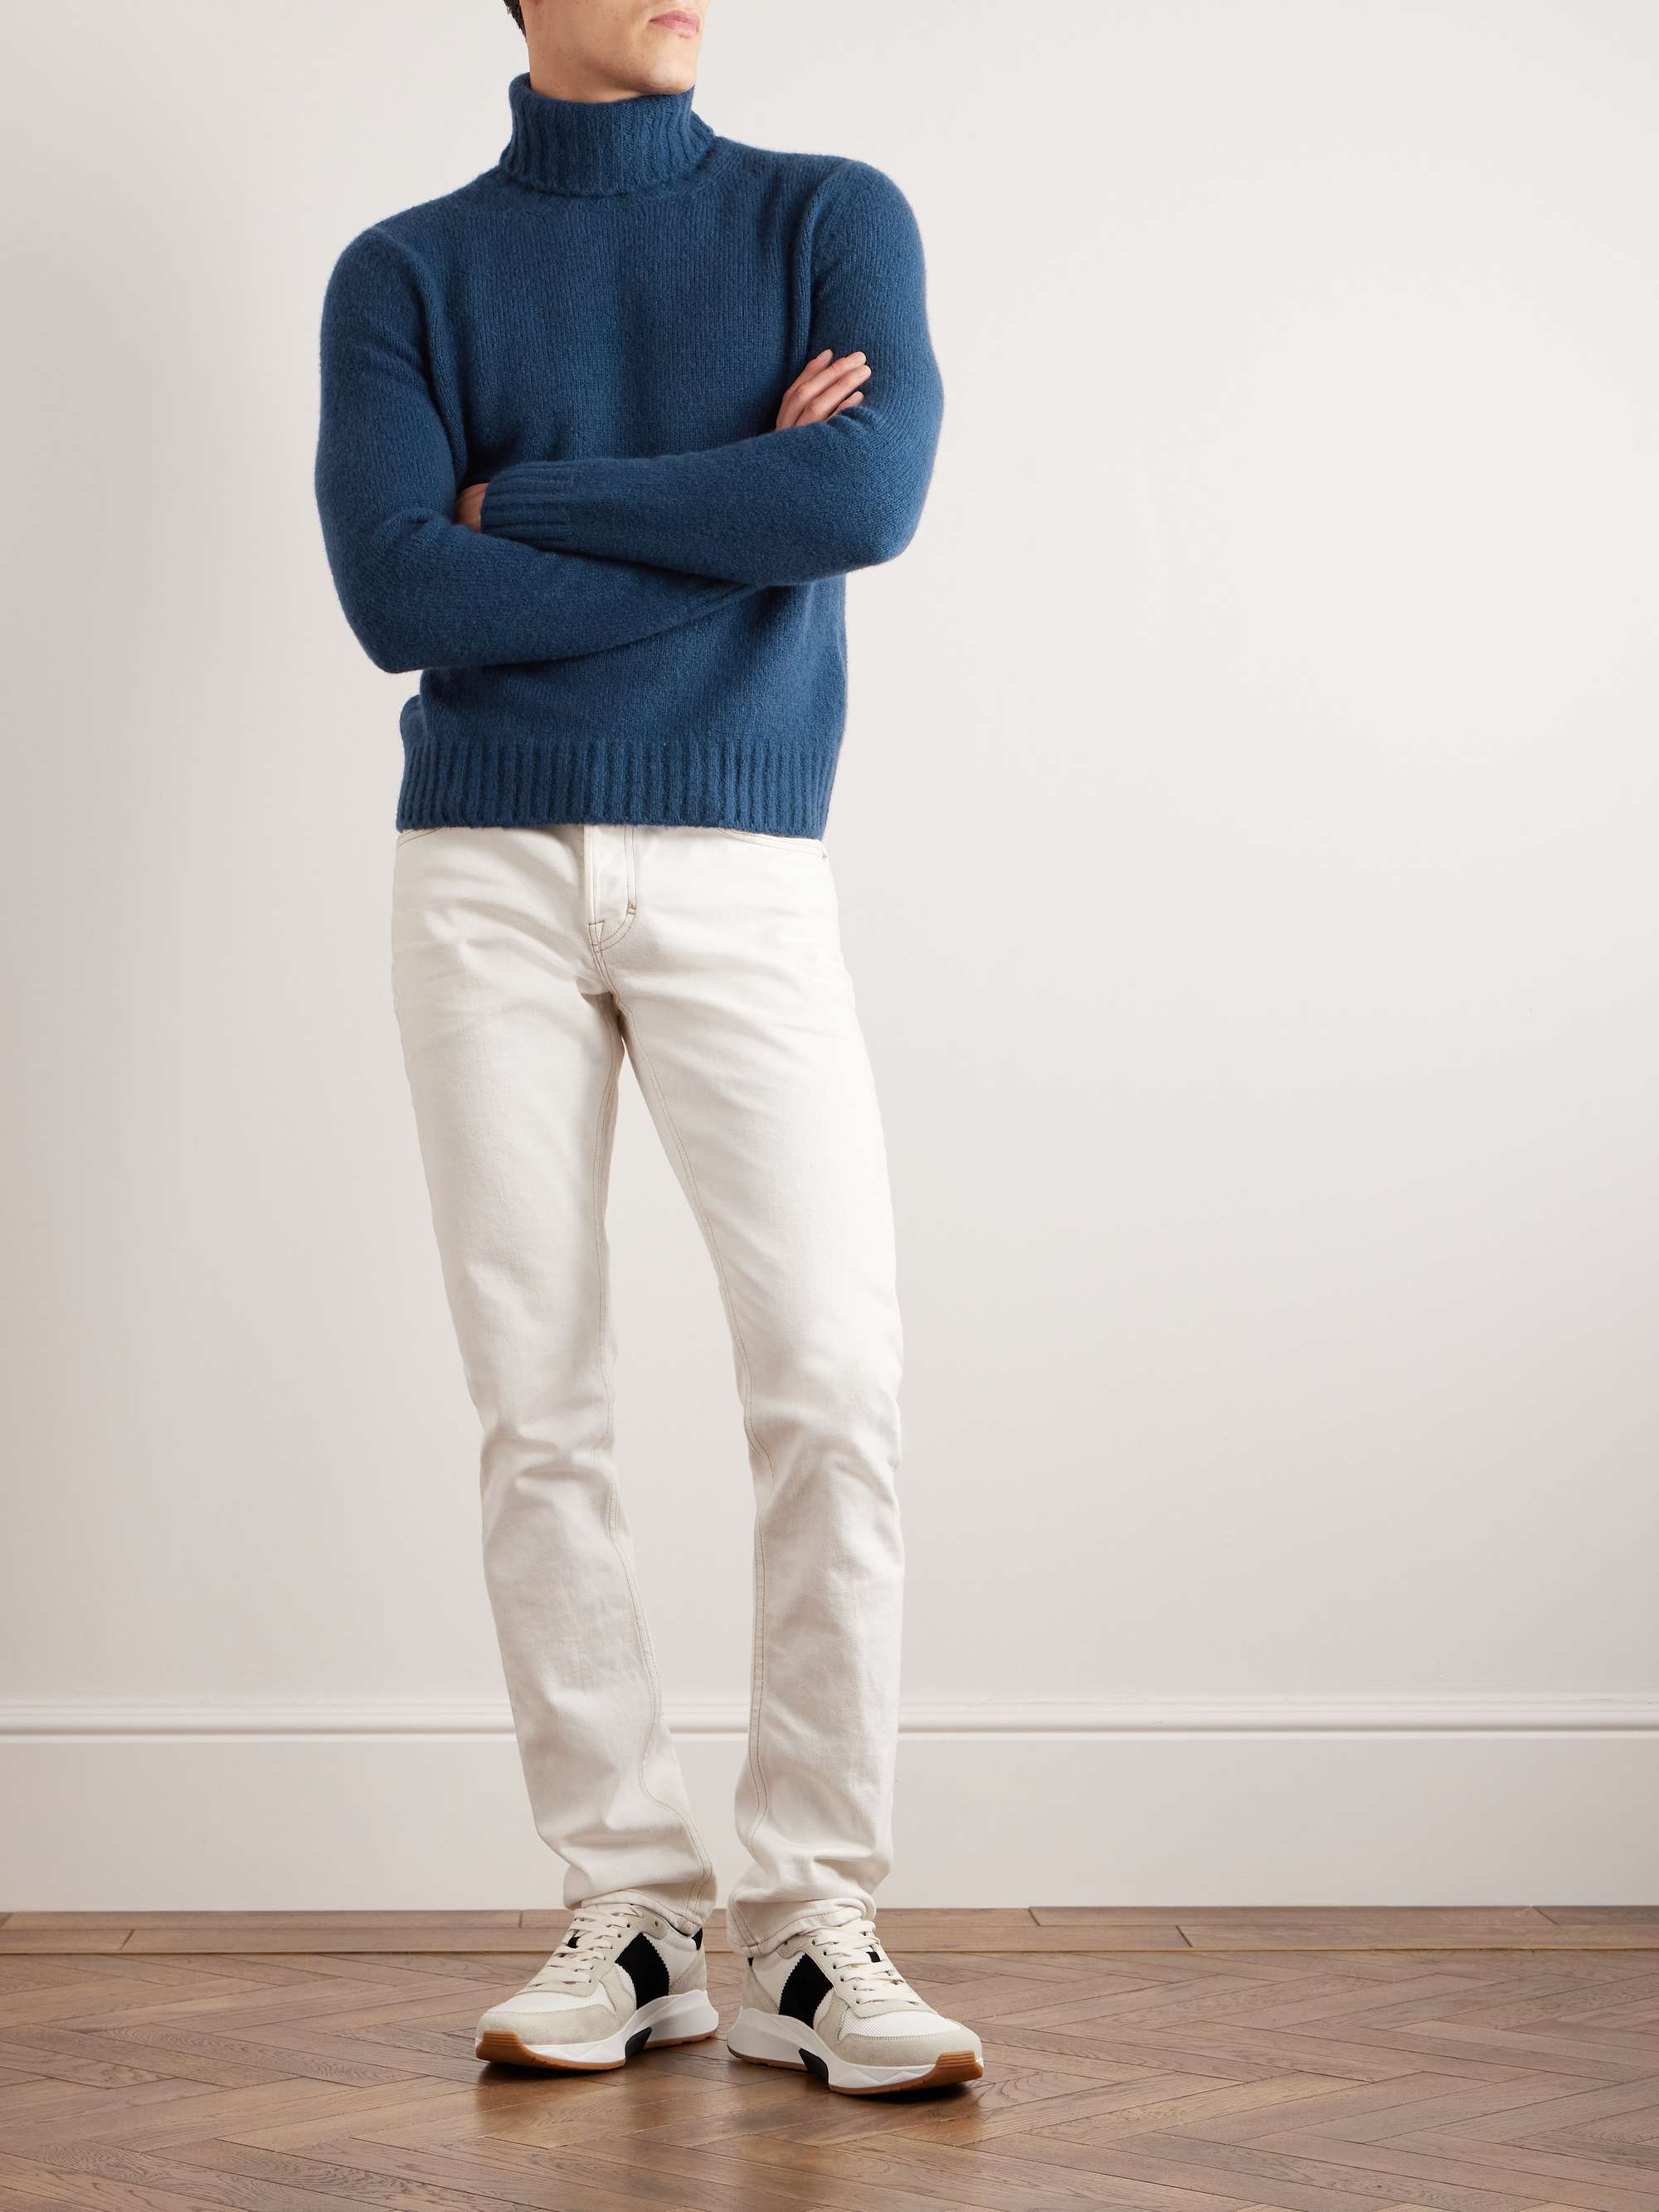 TOM FORD Cashmere-Blend Rollneck Sweater for Men | MR PORTER